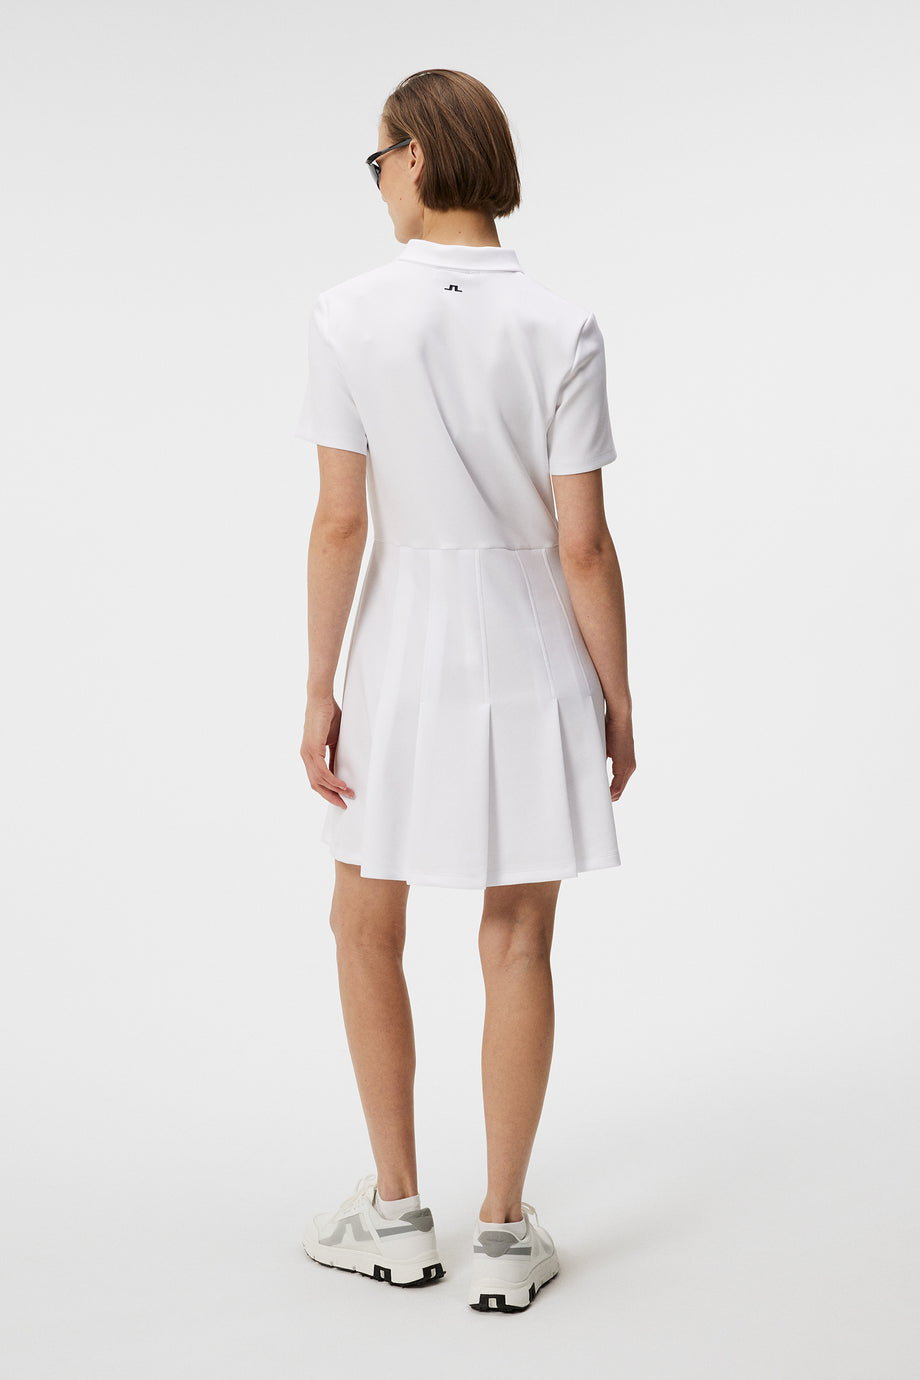 Kanai dress / White